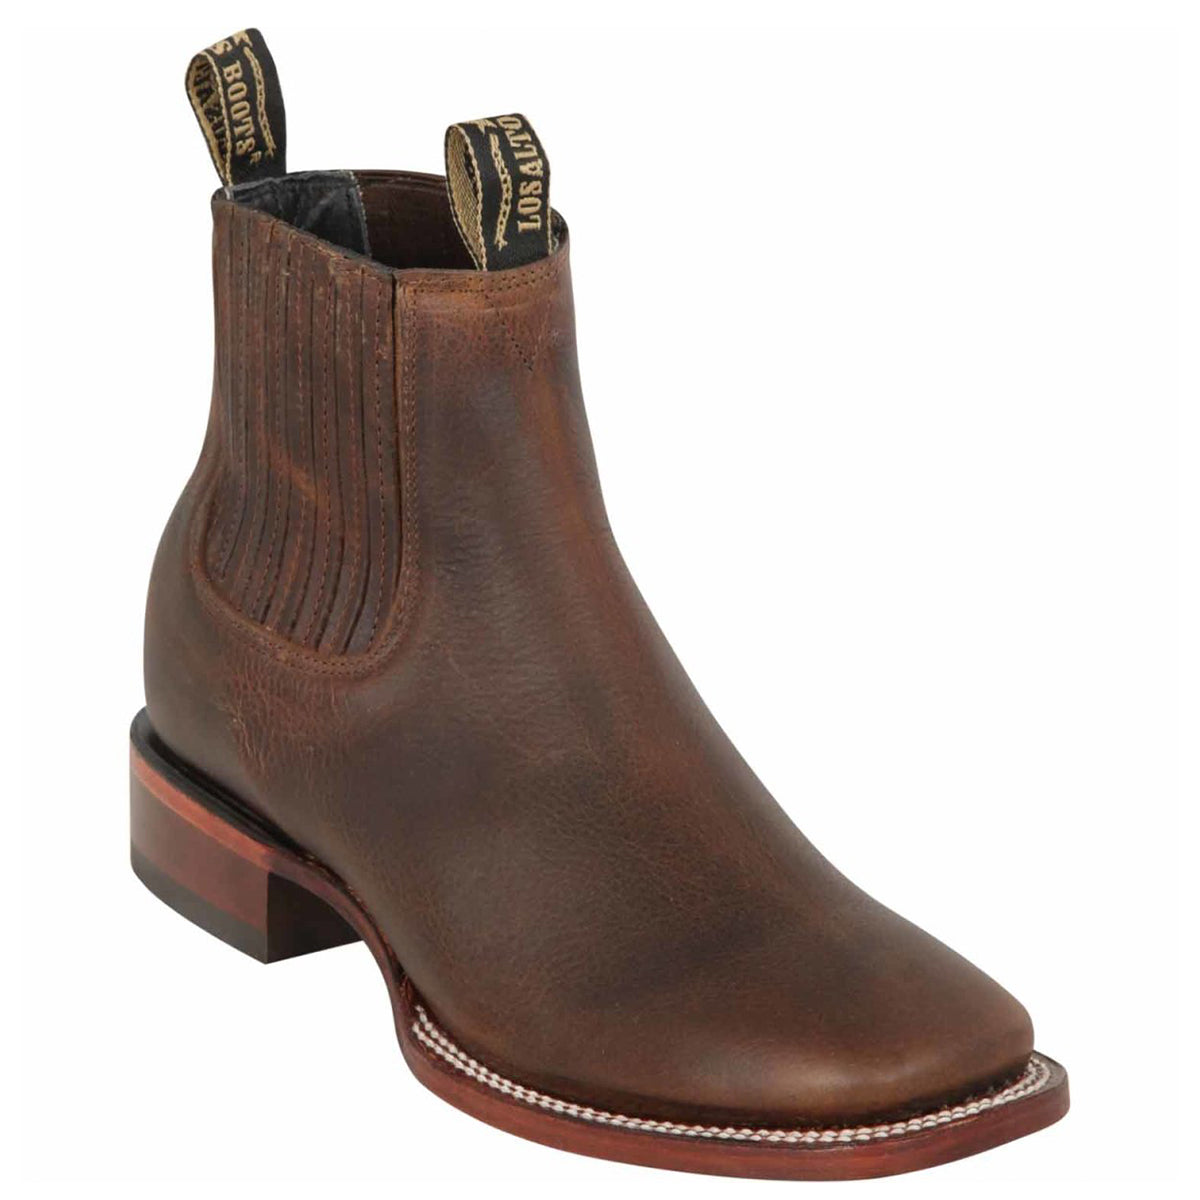 Los Altos Nuez Brown Short Cowboy Boots